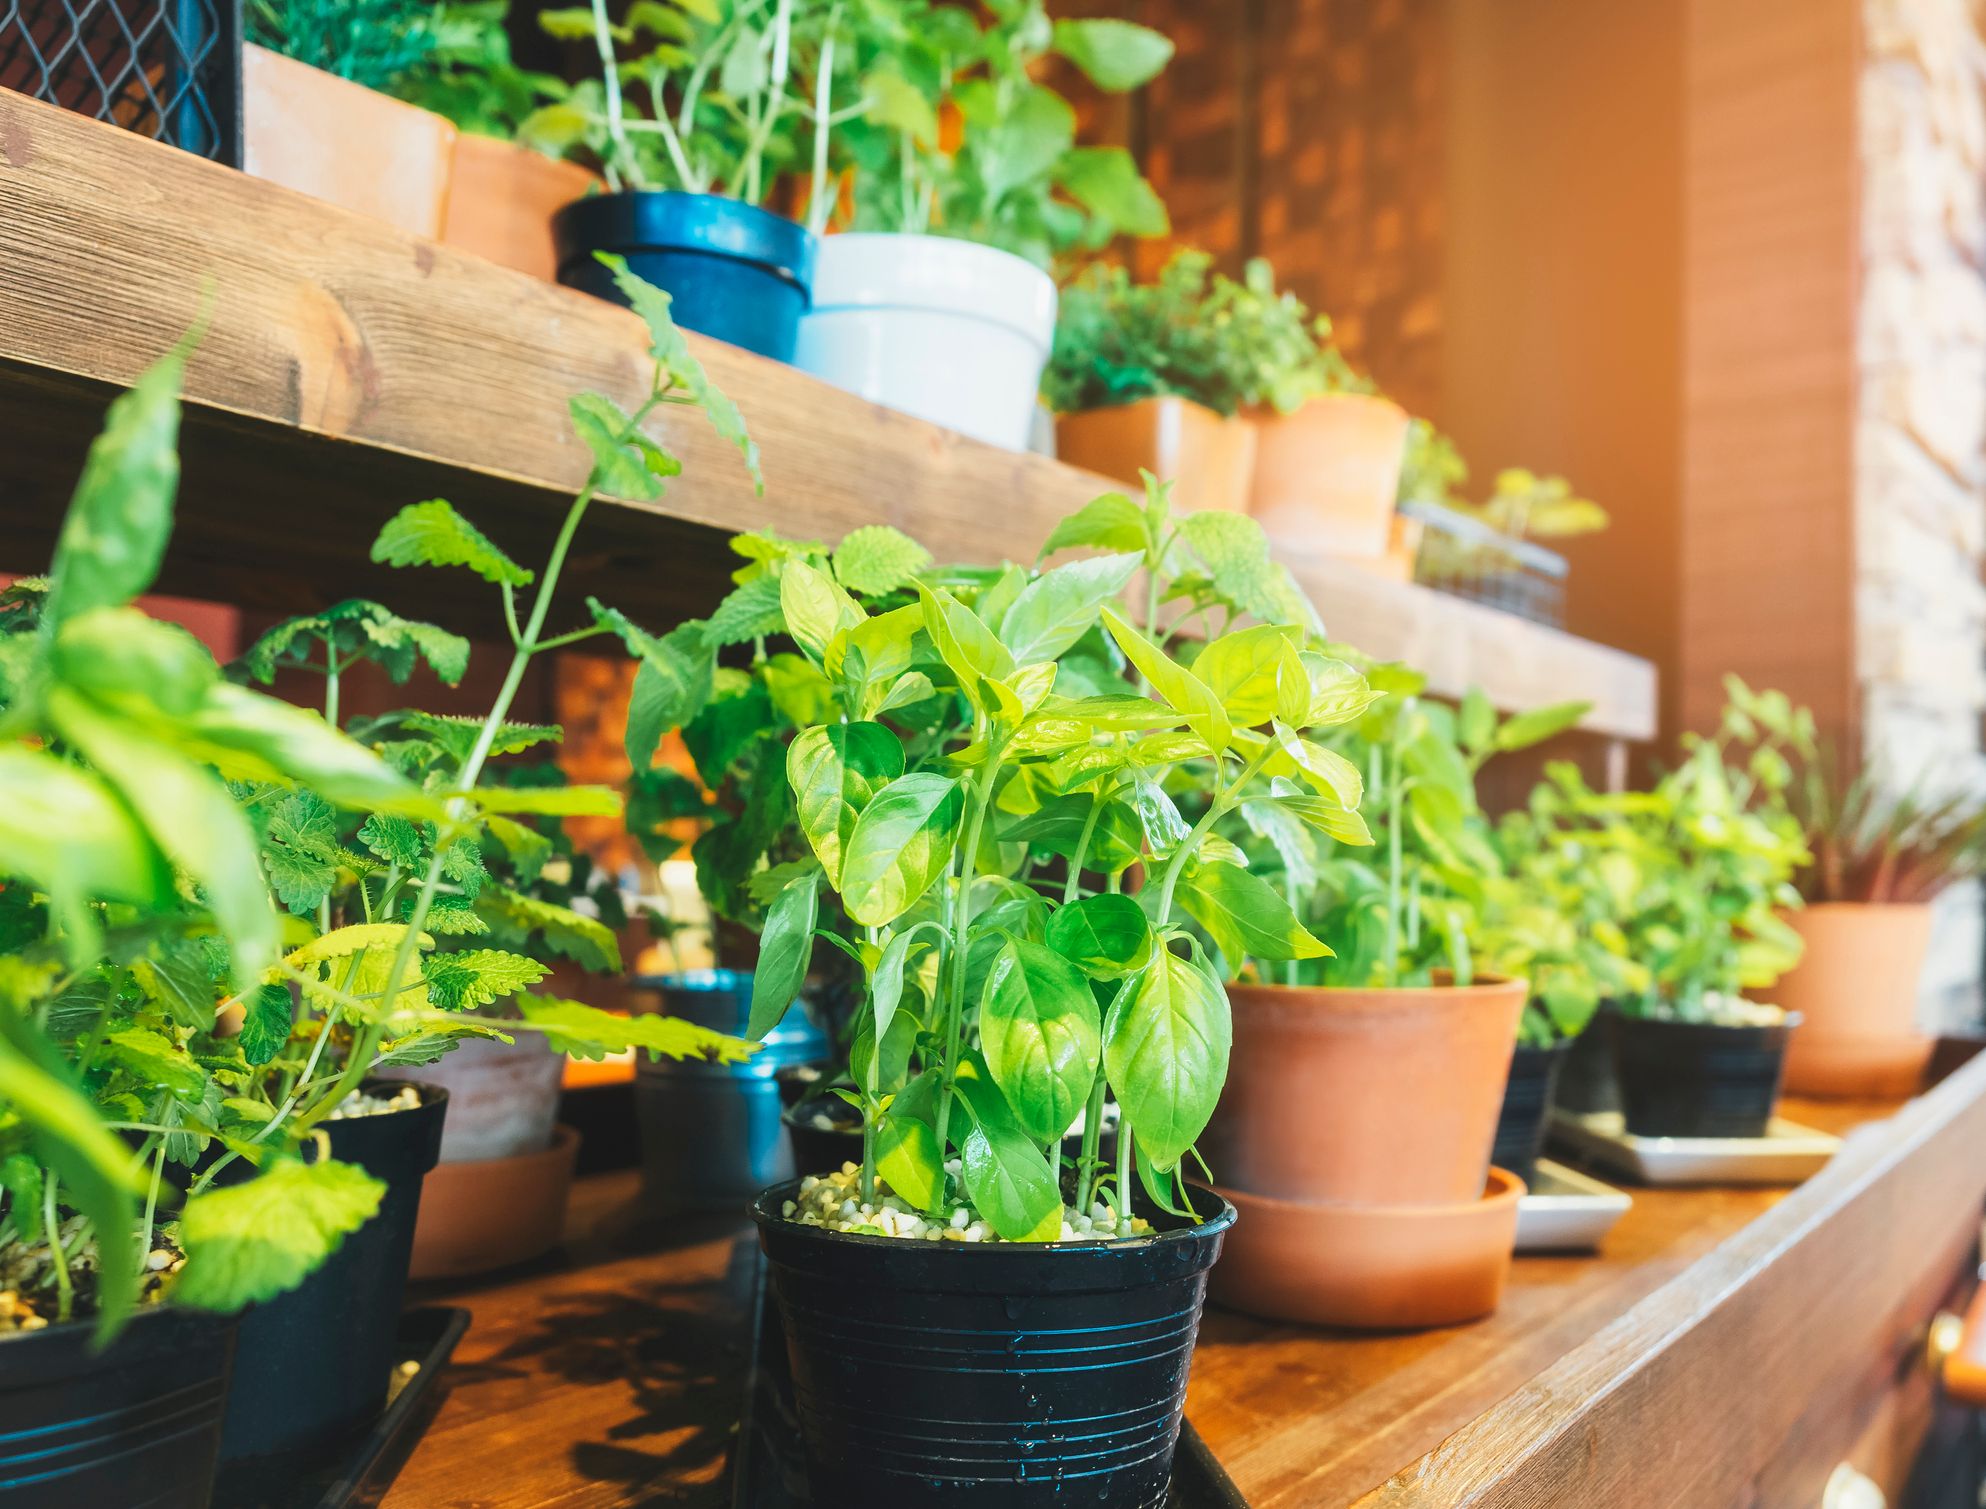 5 astuces pour réussir les plantes d'intérieur - Gamm vert